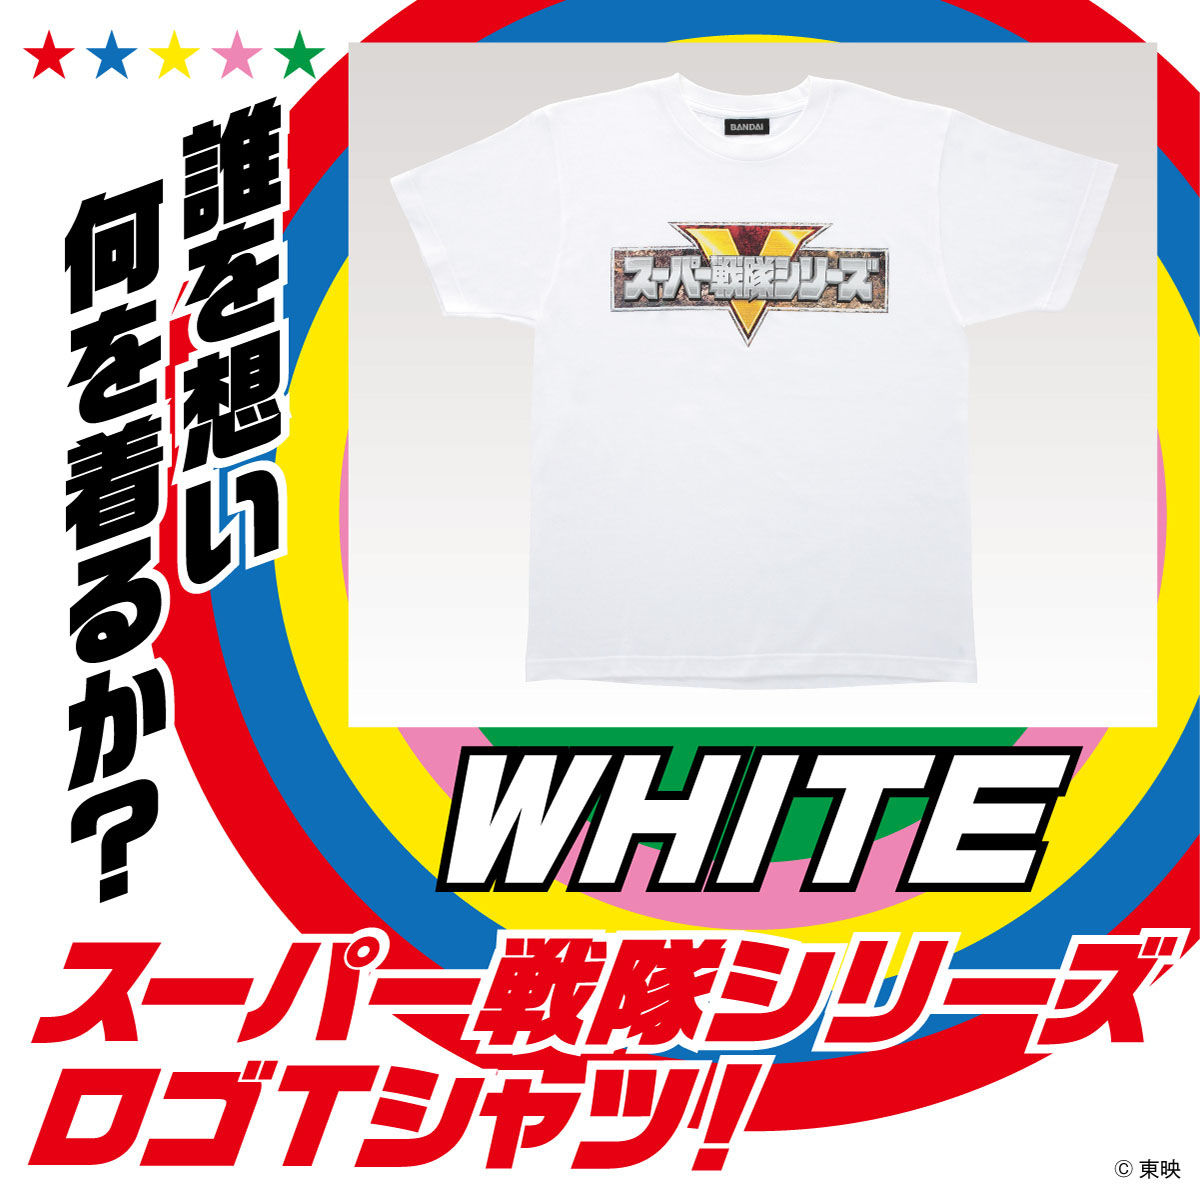 スーパー戦隊シリーズ Tシャツ ホワイト 宇宙戦隊キュウレンジャー 趣味 コレクション バンダイナムコグループ公式通販サイト